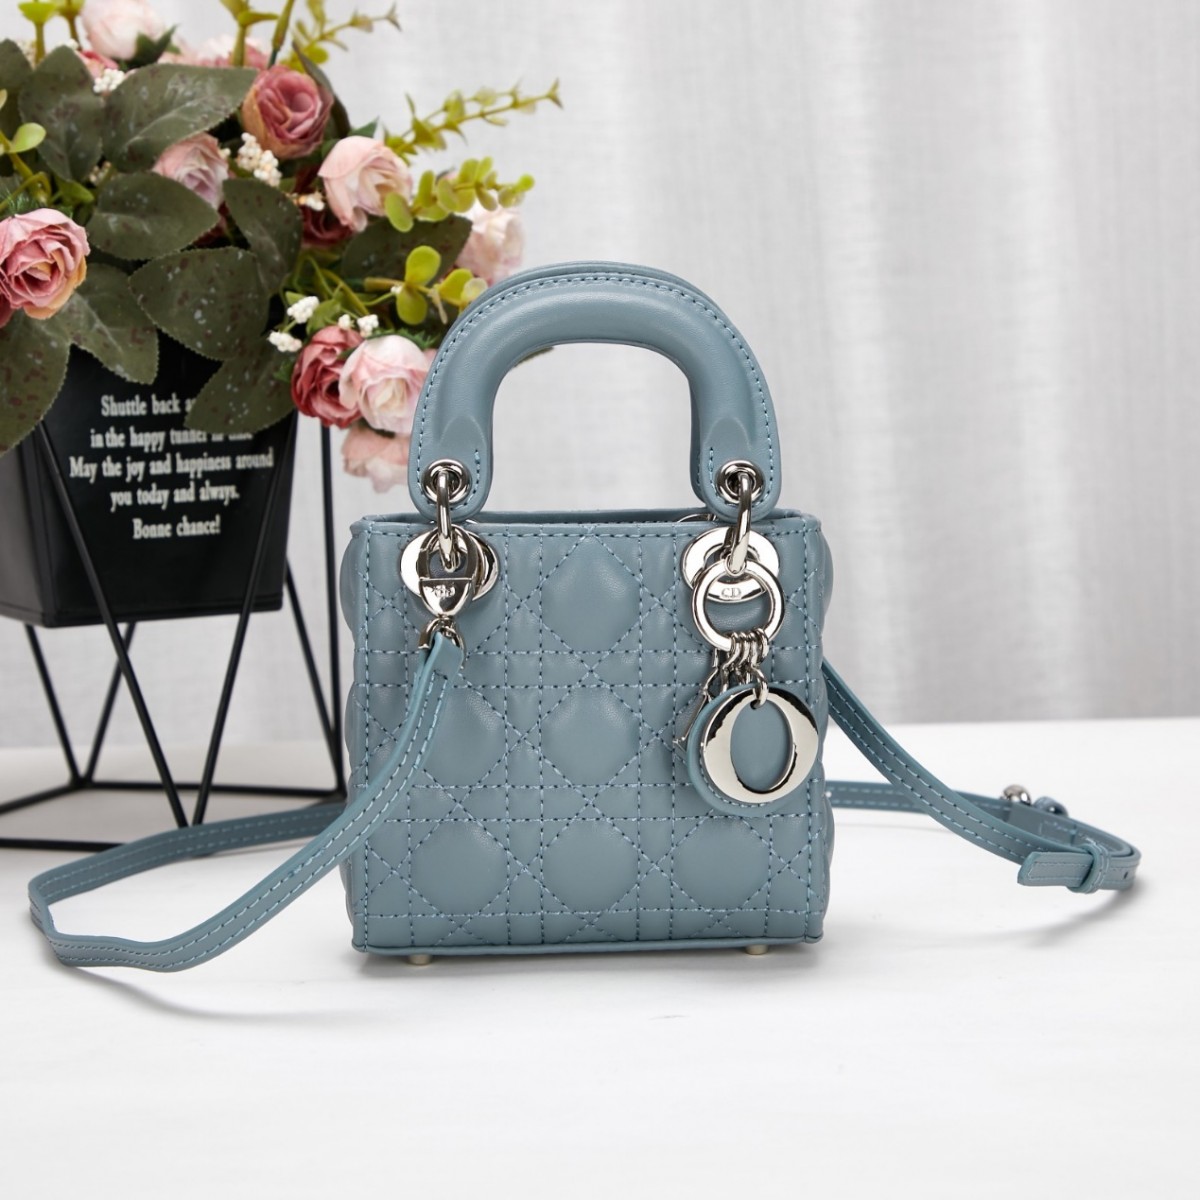 Tại sao những chiếc túi bản sao Lady Dior thanh lịch lại cổ điển đến vậy？ (cập nhật năm 2022)-Best Quality Fake Louis Vuitton Bag Online Store, Replica designer bag ru